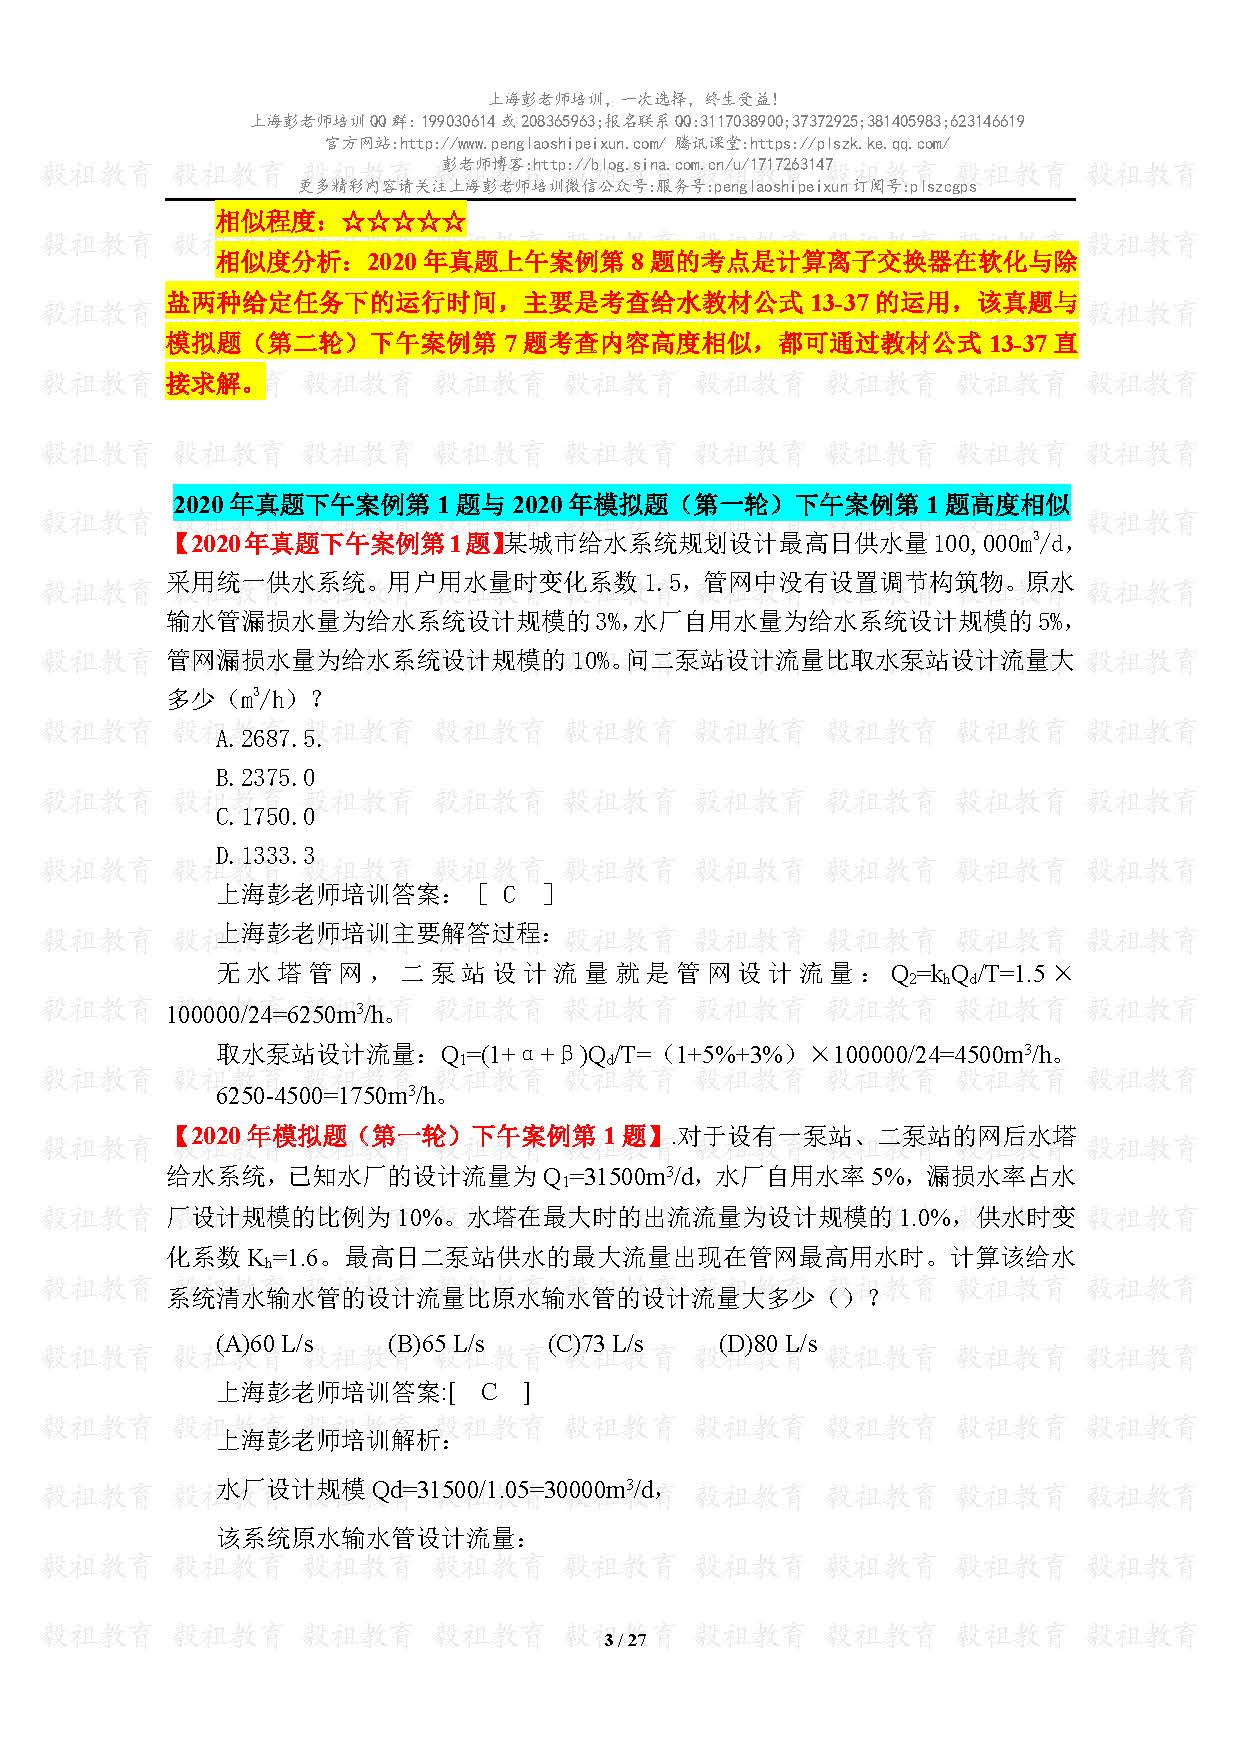 2020注册给排水考试真题与模考题相似度分析-上海彭老师培训_页面_03.jpg.jpg